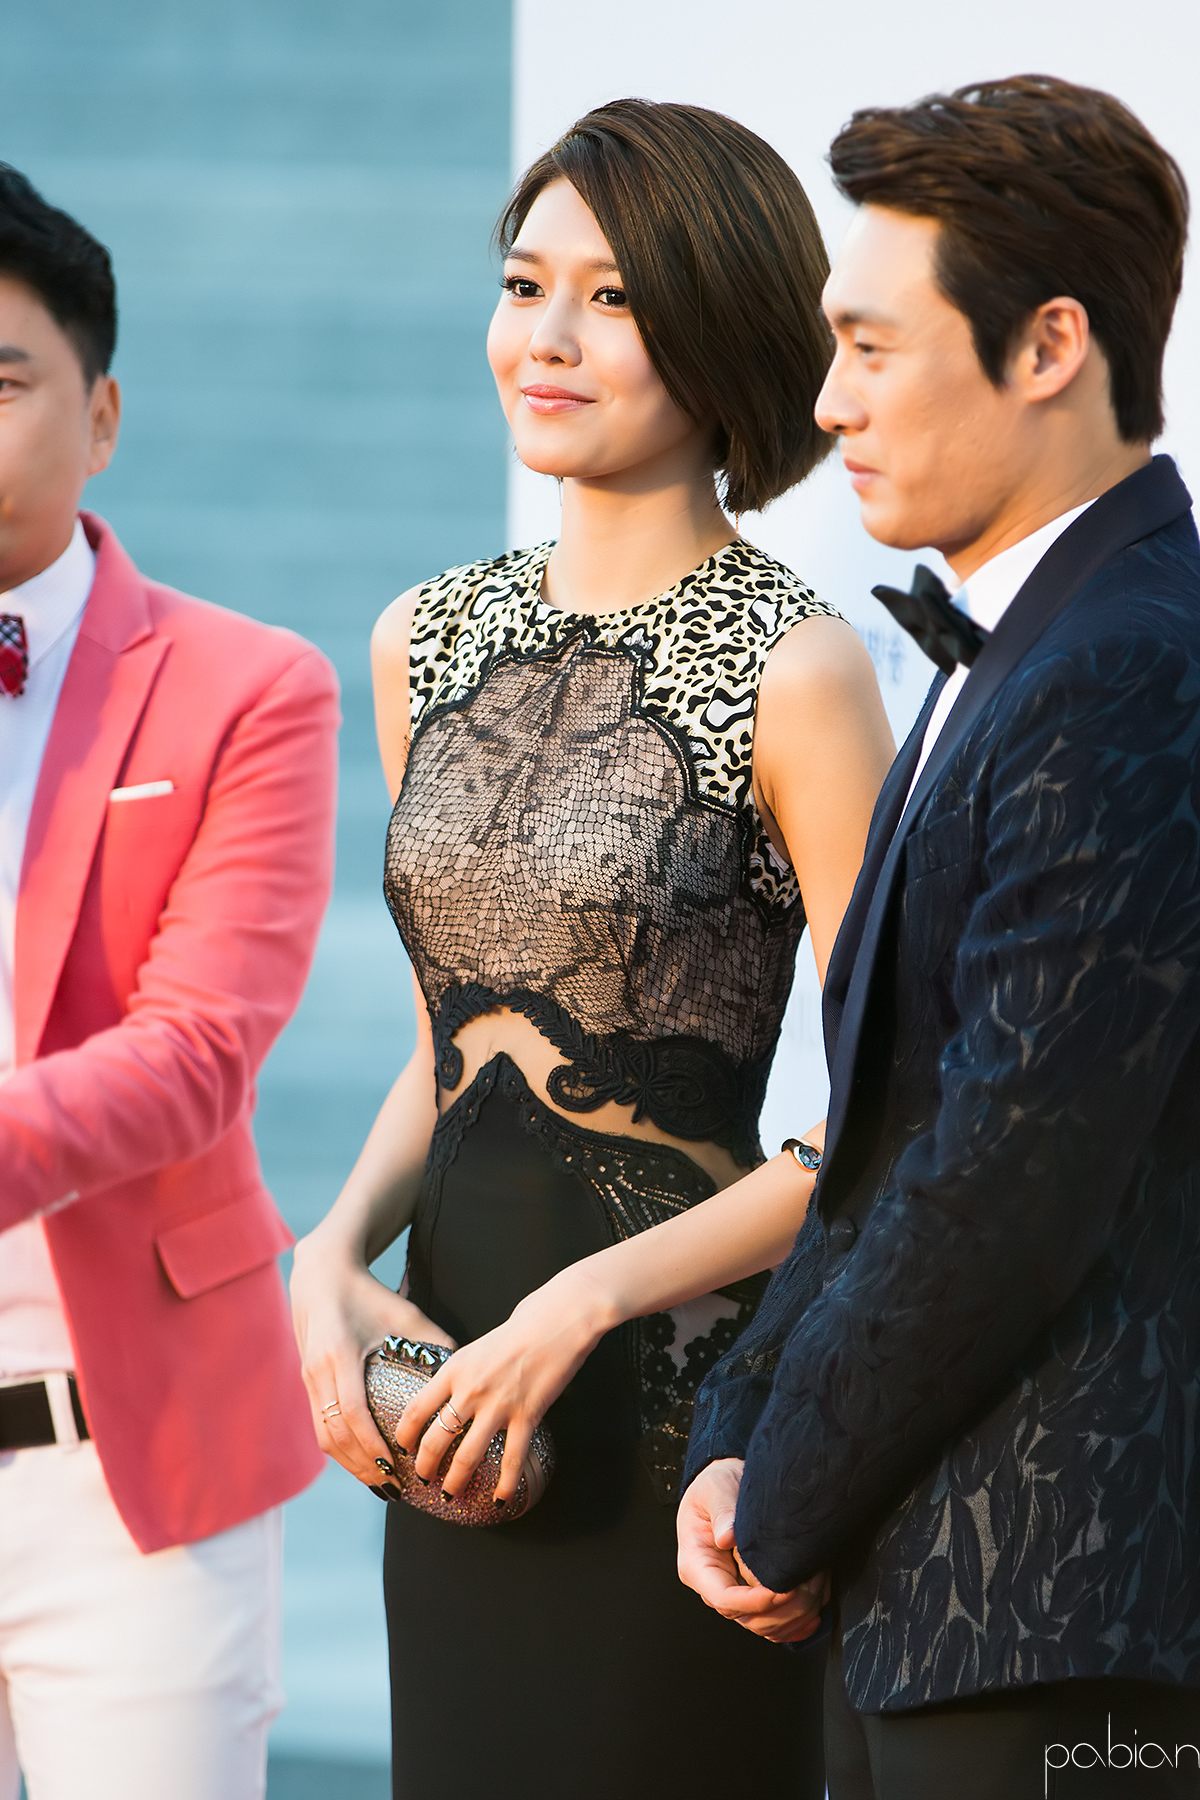 [PIC][09-10-2015]SooYoung đảm nhận vai trò MC cho "2015 Korea Drama Awards" + Nhận giải "Female Excellence Award" vào hôm nay 2544EB4456188D39305B8B